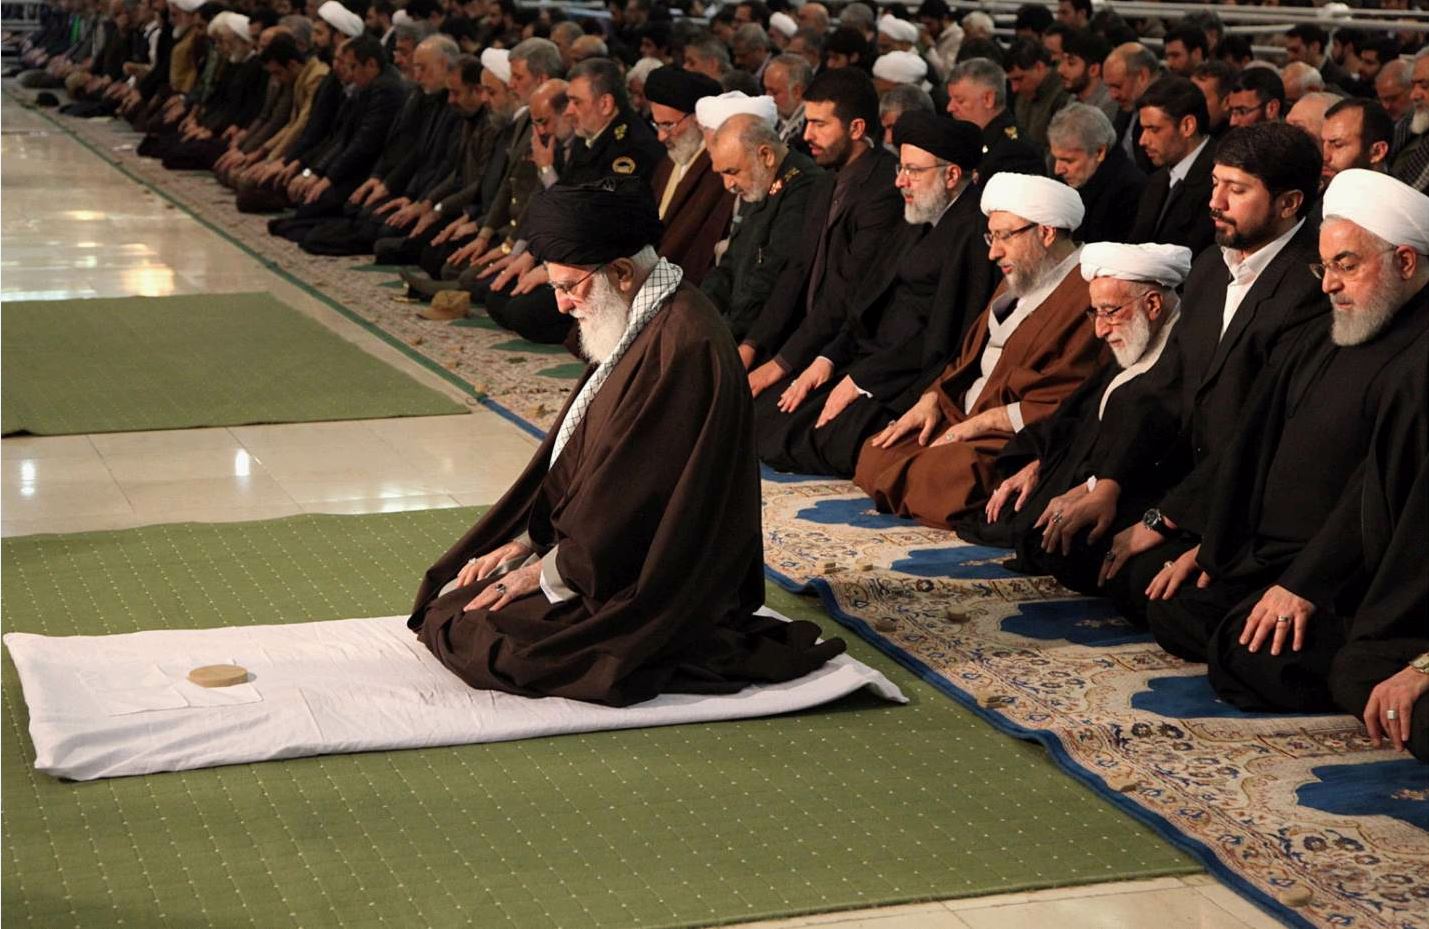 Верховный руководитель Ирана Али Хаменеи совершает пятничный намаз, 17.01.2020 г.